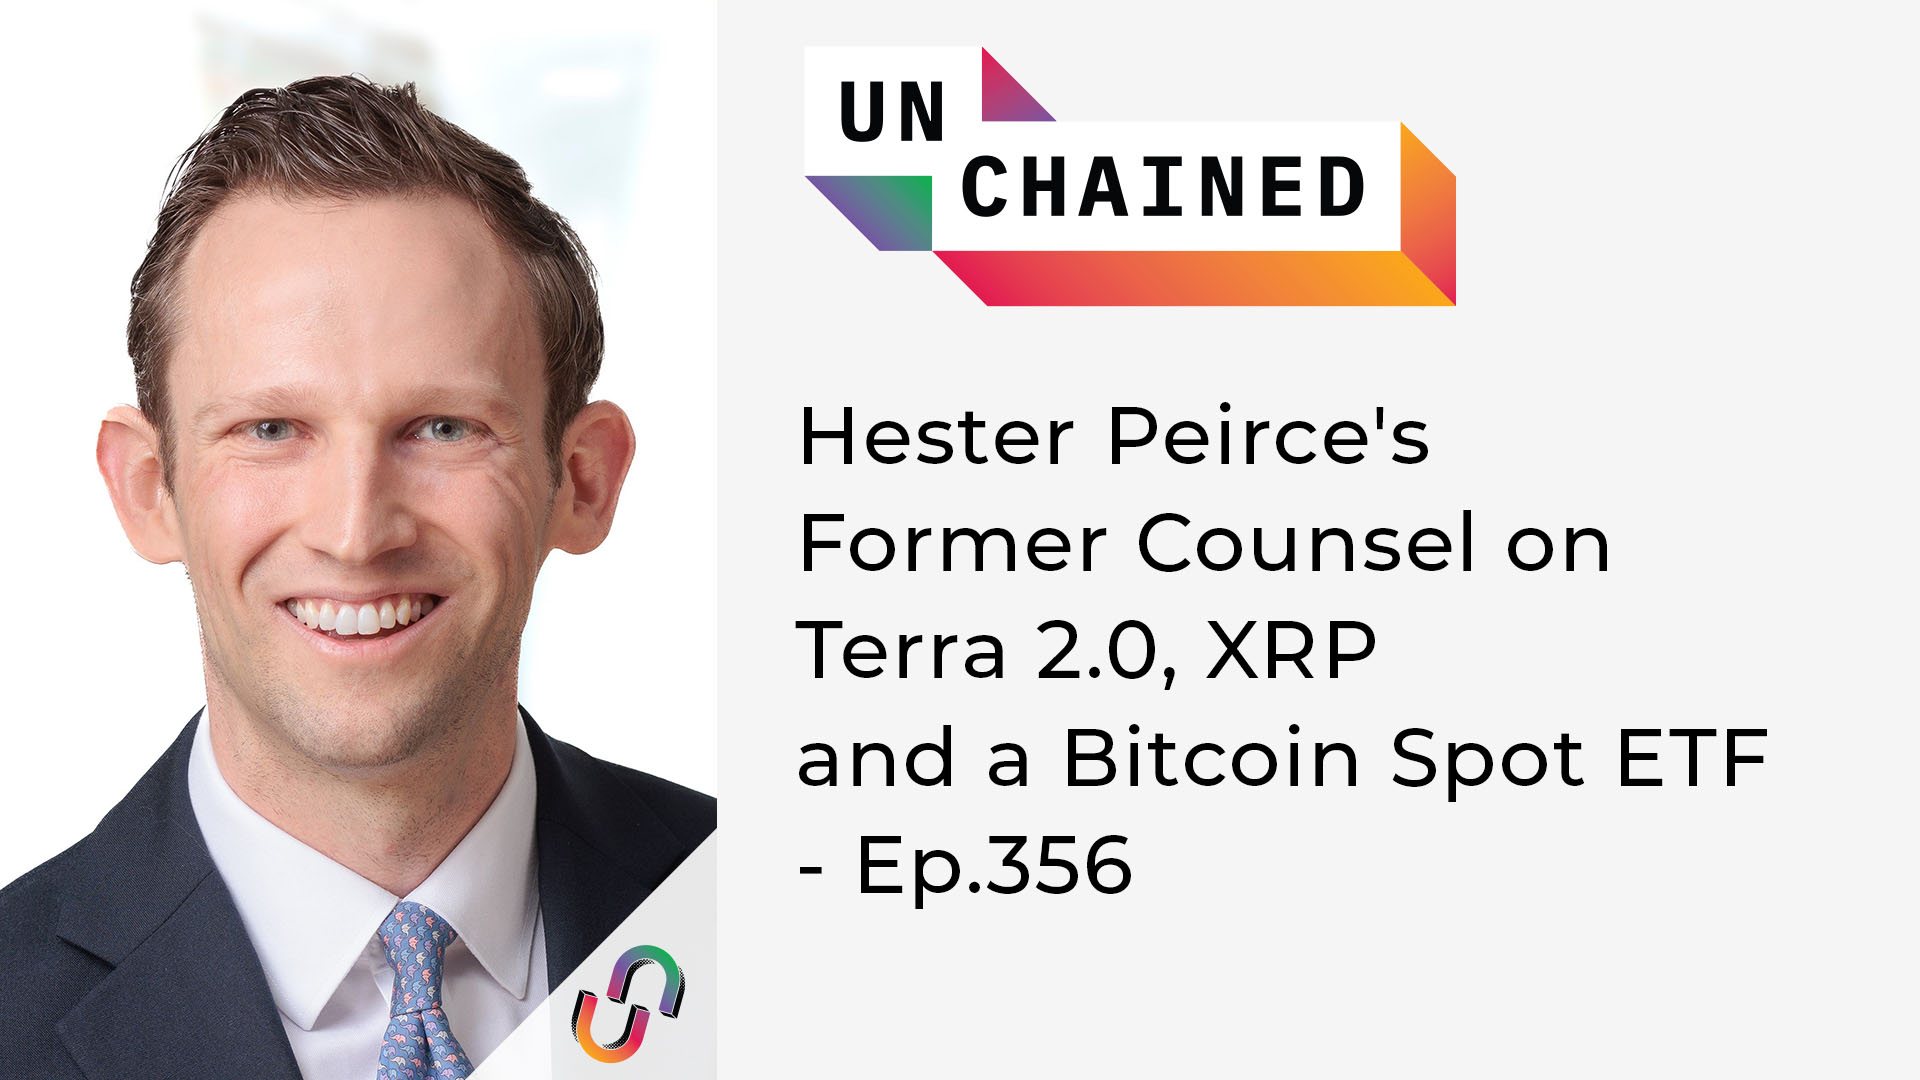 Unchained - Ep.356 - Hester Peirce'in Terra 2.0, XRP ve Bitcoin Spot ETF'deki Eski Danışmanı